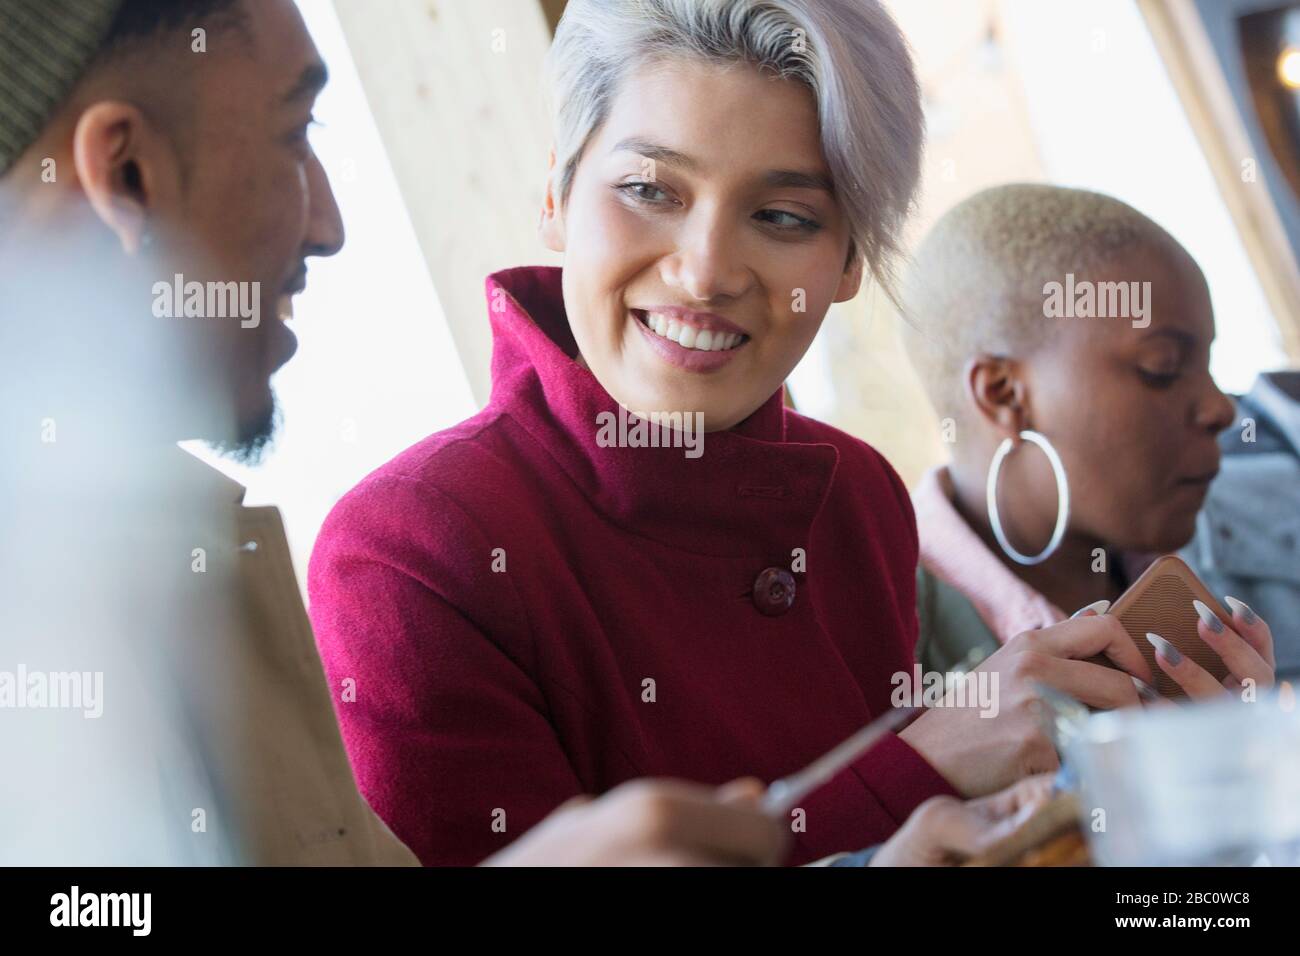 Jeune femme souriante parlant avec un ami Banque D'Images